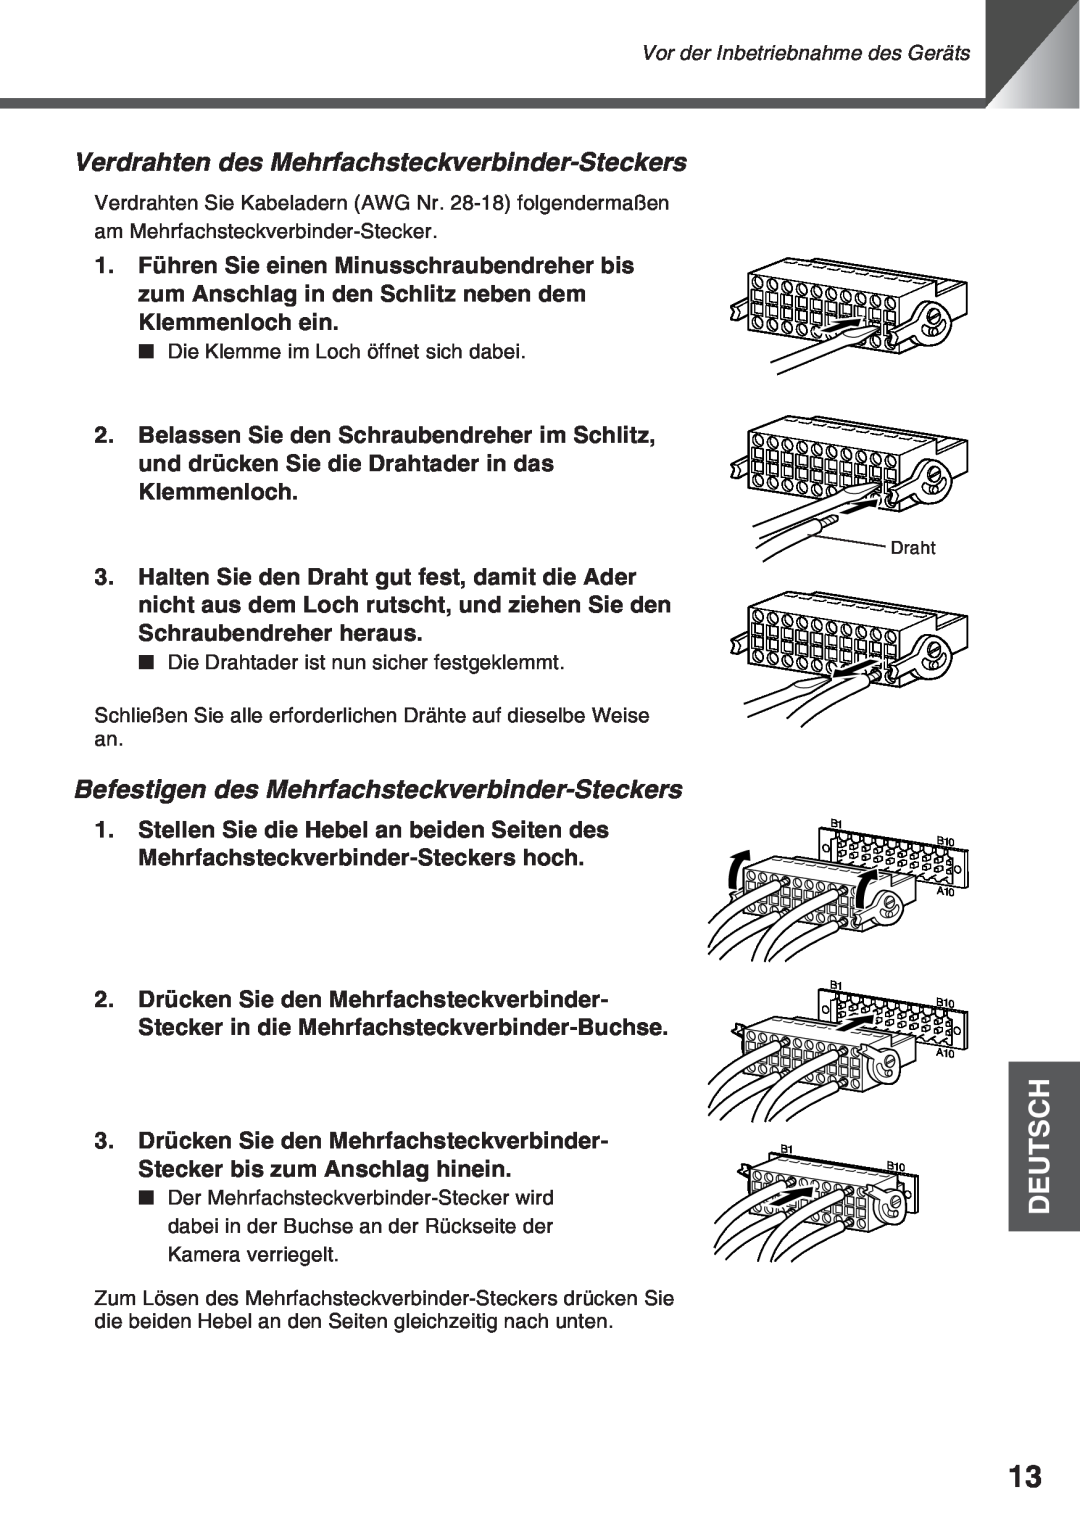 Canon VC-C50i Verdrahten des Mehrfachsteckverbinder-Steckers, Befestigen des Mehrfachsteckverbinder-Steckers, Deutsch 